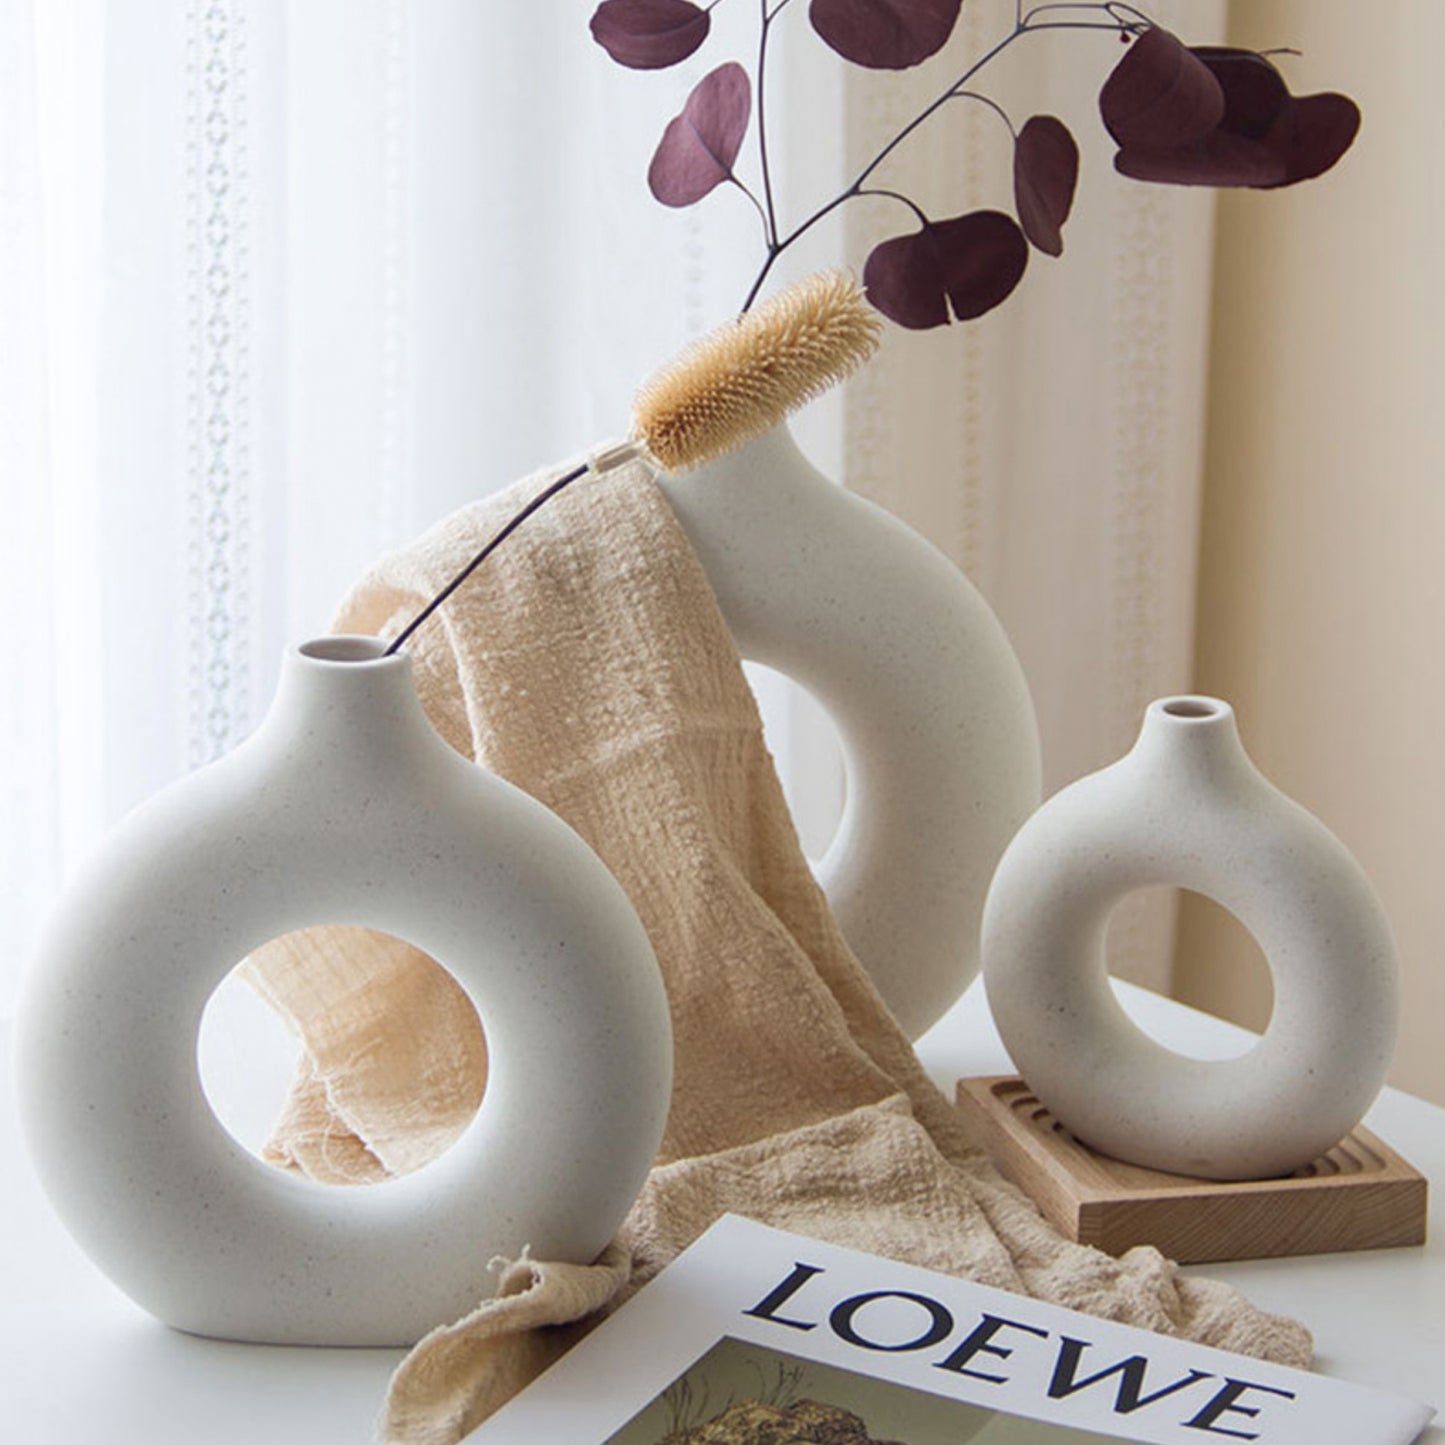 Ceramic Donut Vases